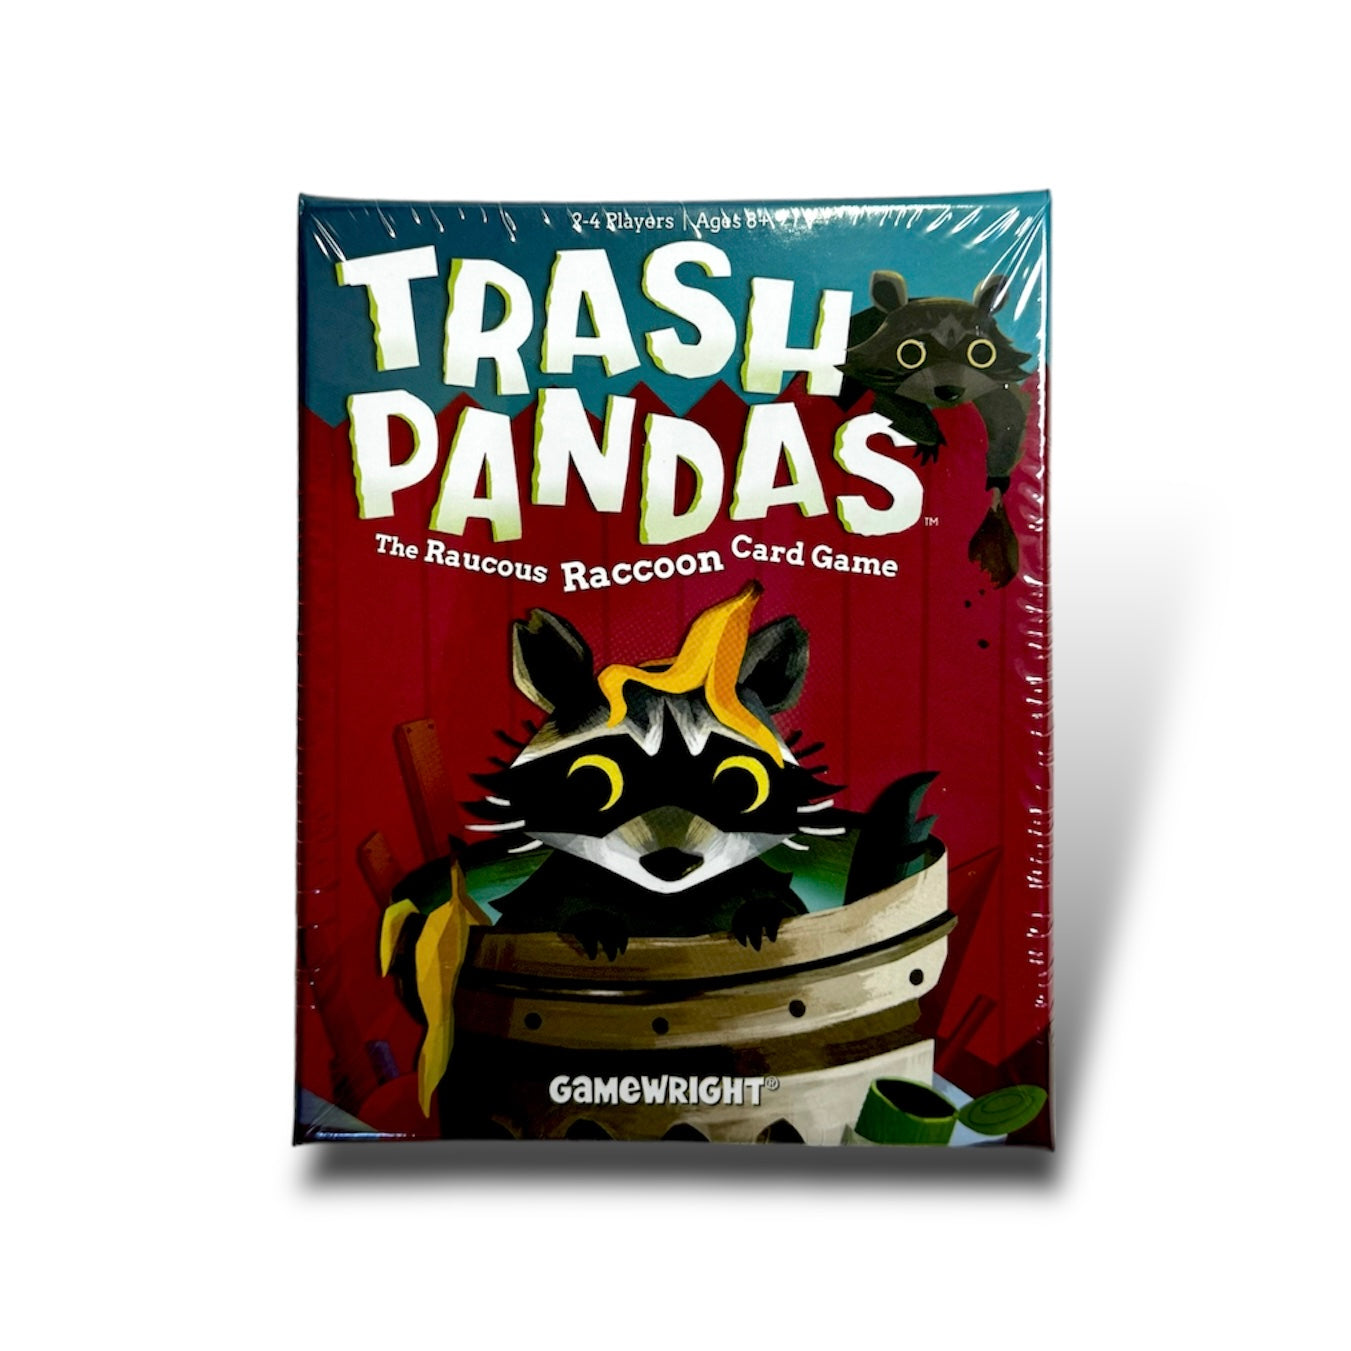 Trash pandas